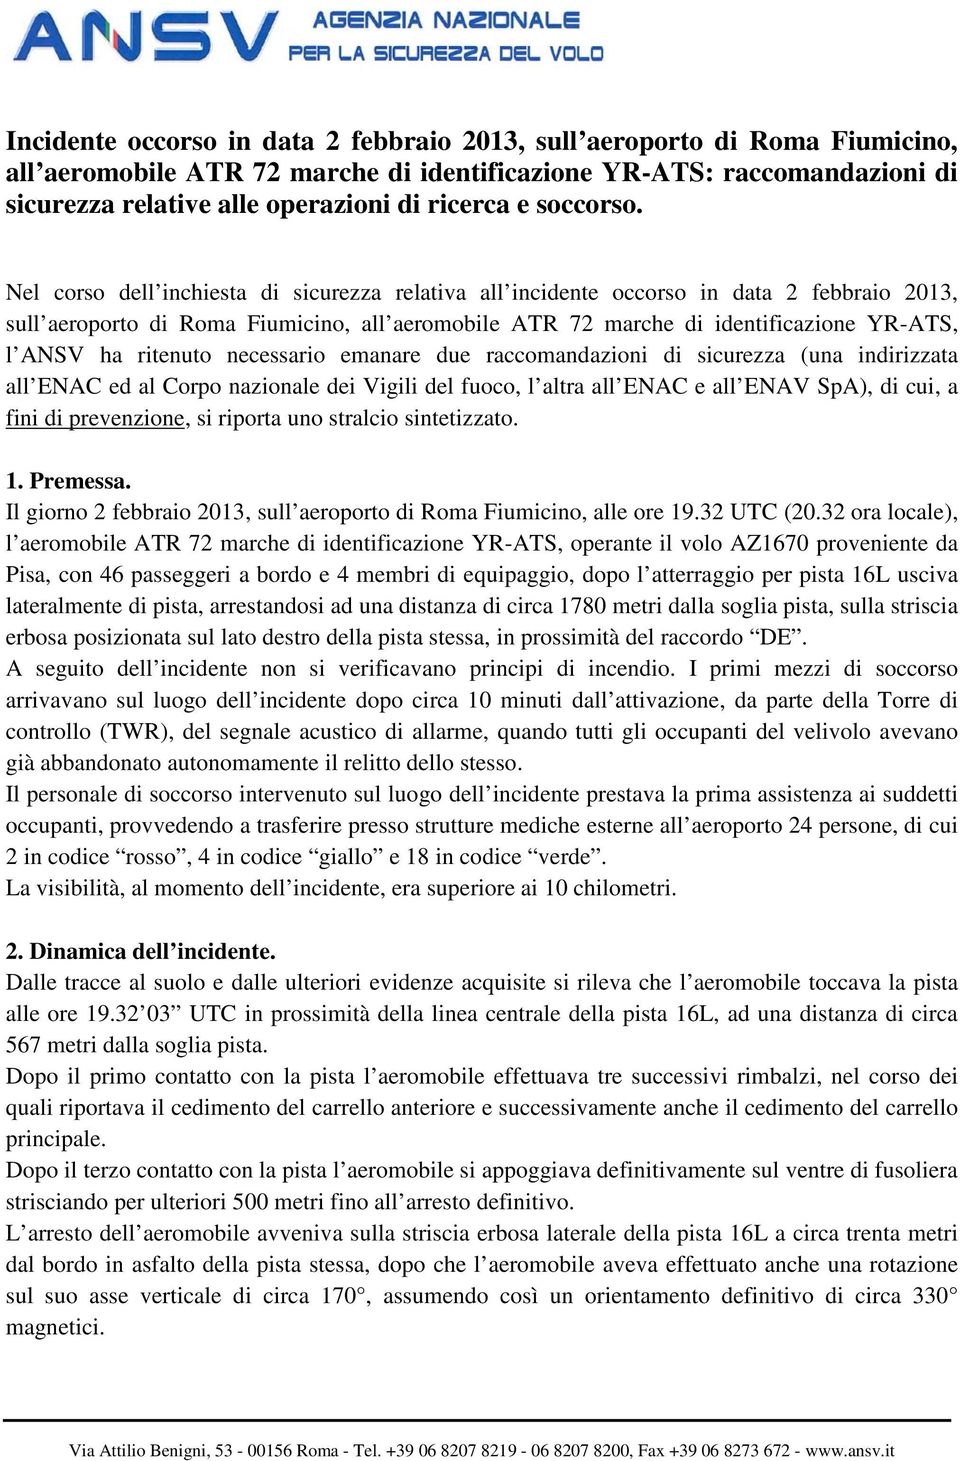 Nel corso dell inchiesta di sicurezza relativa all incidente occorso in data 2 febbraio 2013, sull aeroporto di Roma Fiumicino, all aeromobile ATR 72 marche di identificazione YR-ATS, l ANSV ha